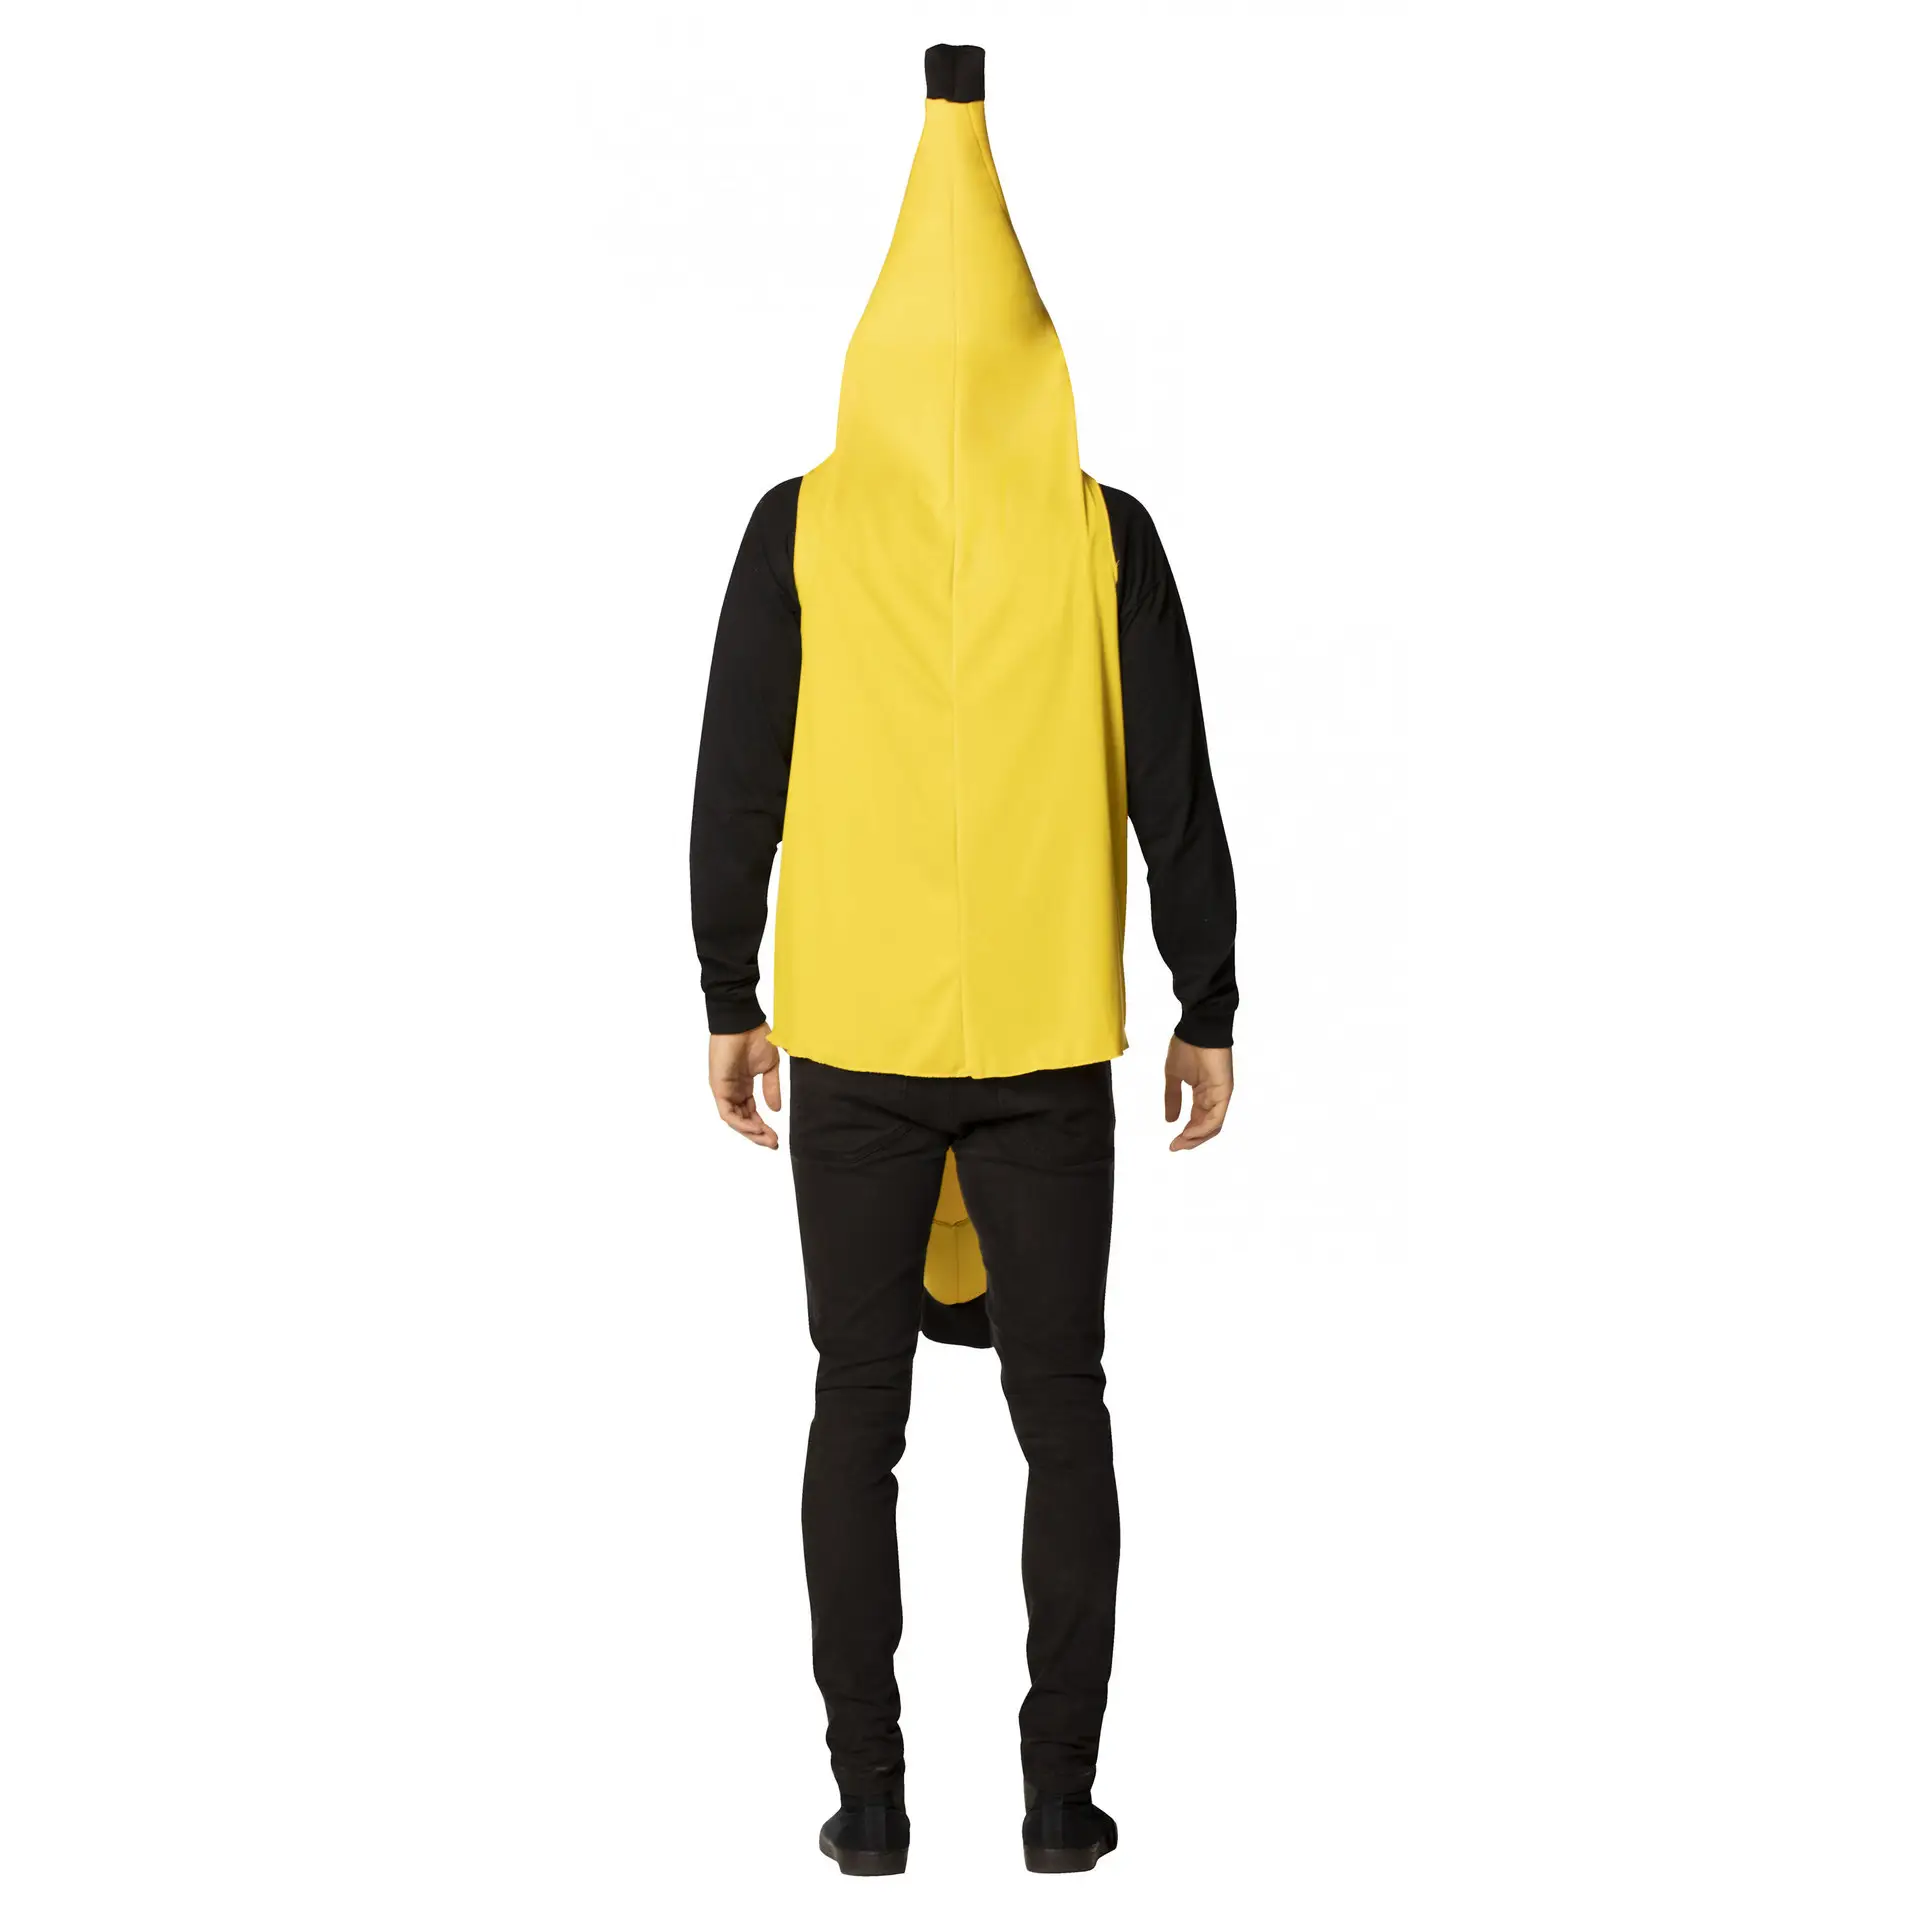 Kostum pisang untuk dewasa uniseks, gaun Halloween mewah untuk kegiatan luar ruangan permainan peran pesta